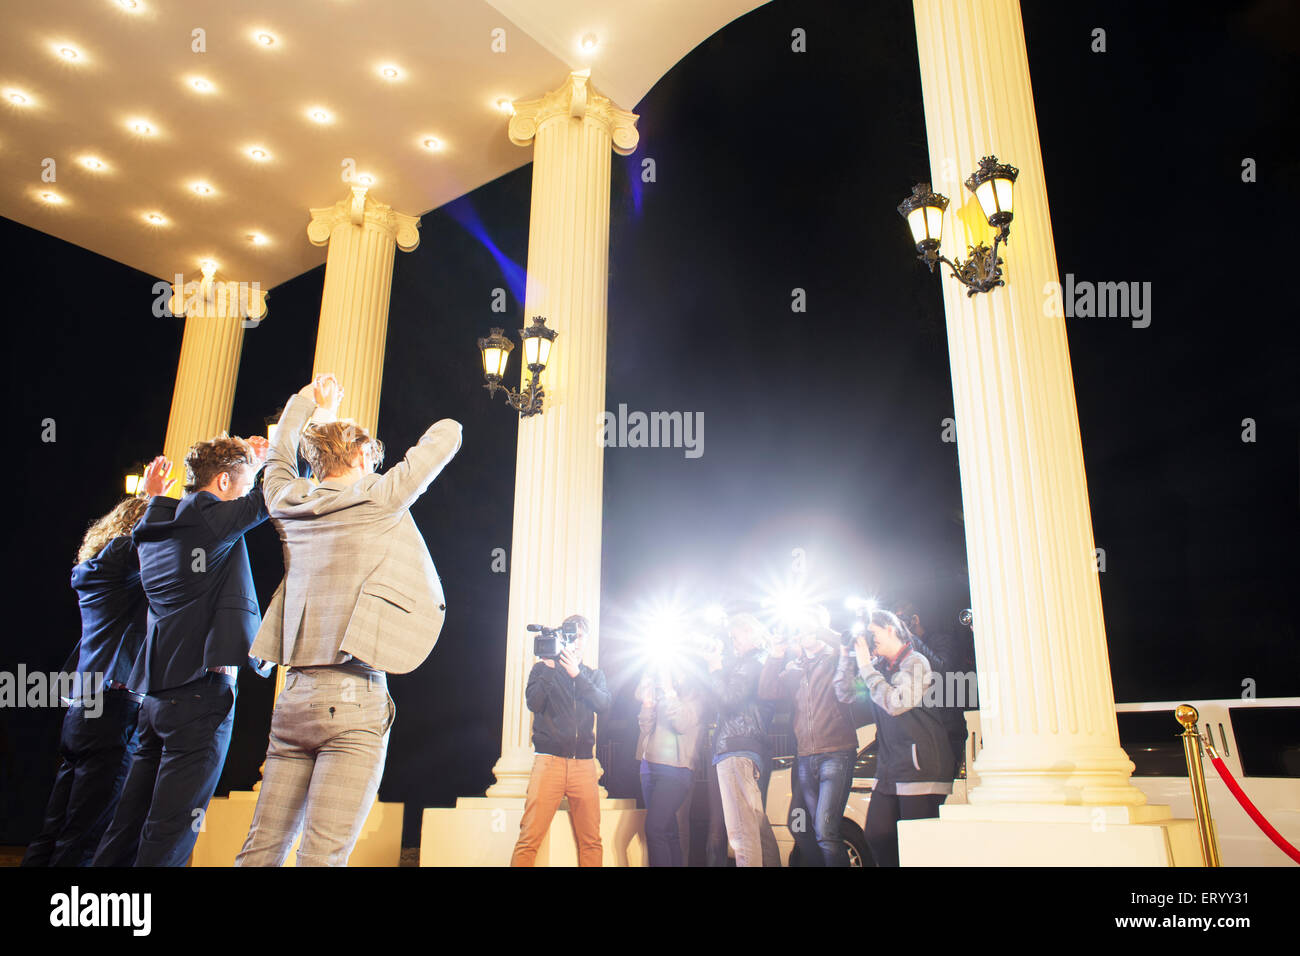 Prominente posiert mit für Paparazzi-Fotografen bei erhobenen Armen Stockfoto